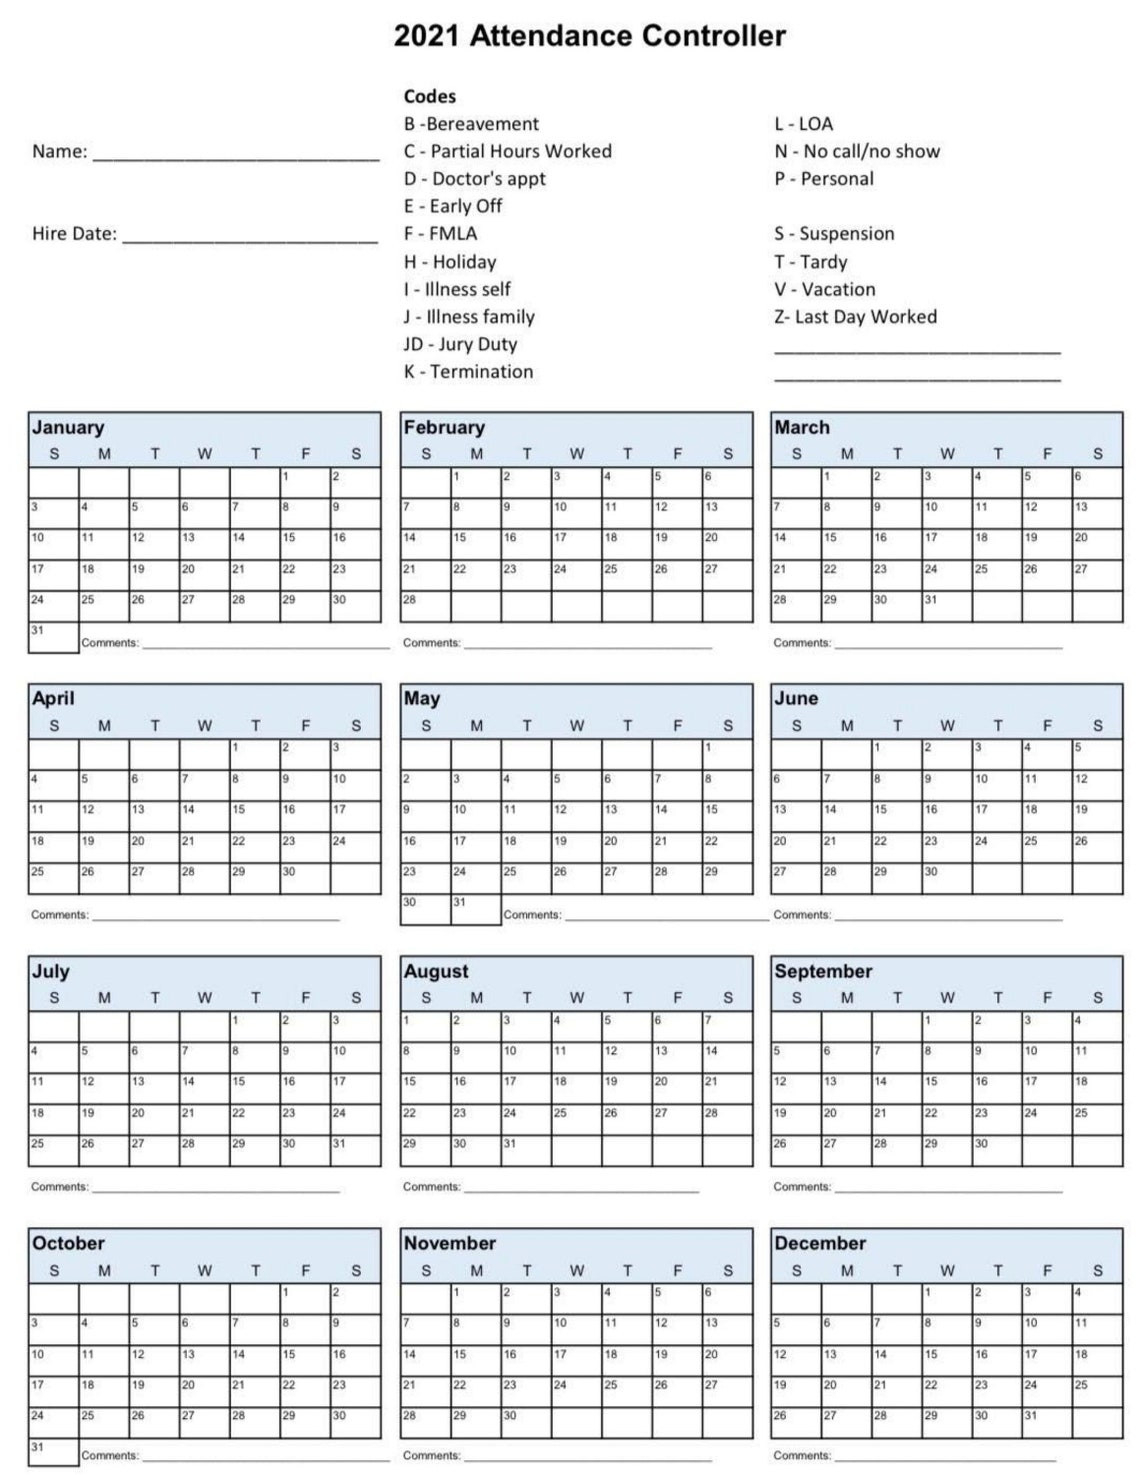 2021 Employee School Attendance Tracker Calendar Employee-2021 Attendance Tracker